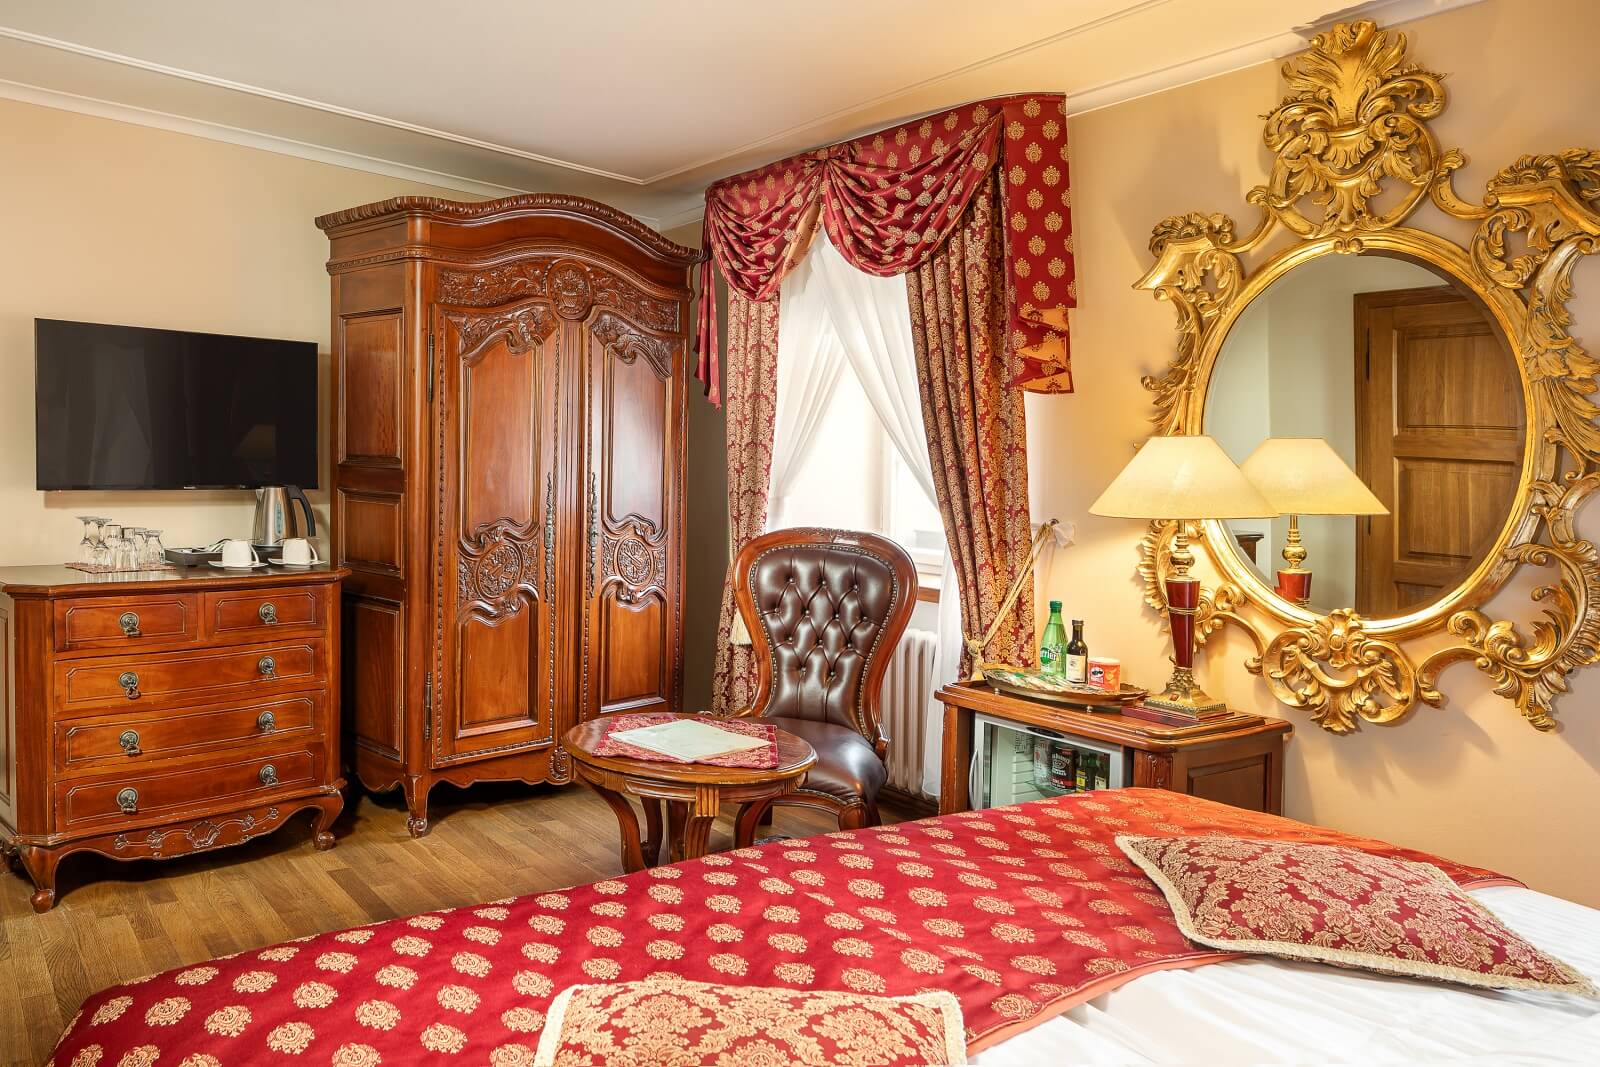 Pokoj hotelu U Prince, Praha